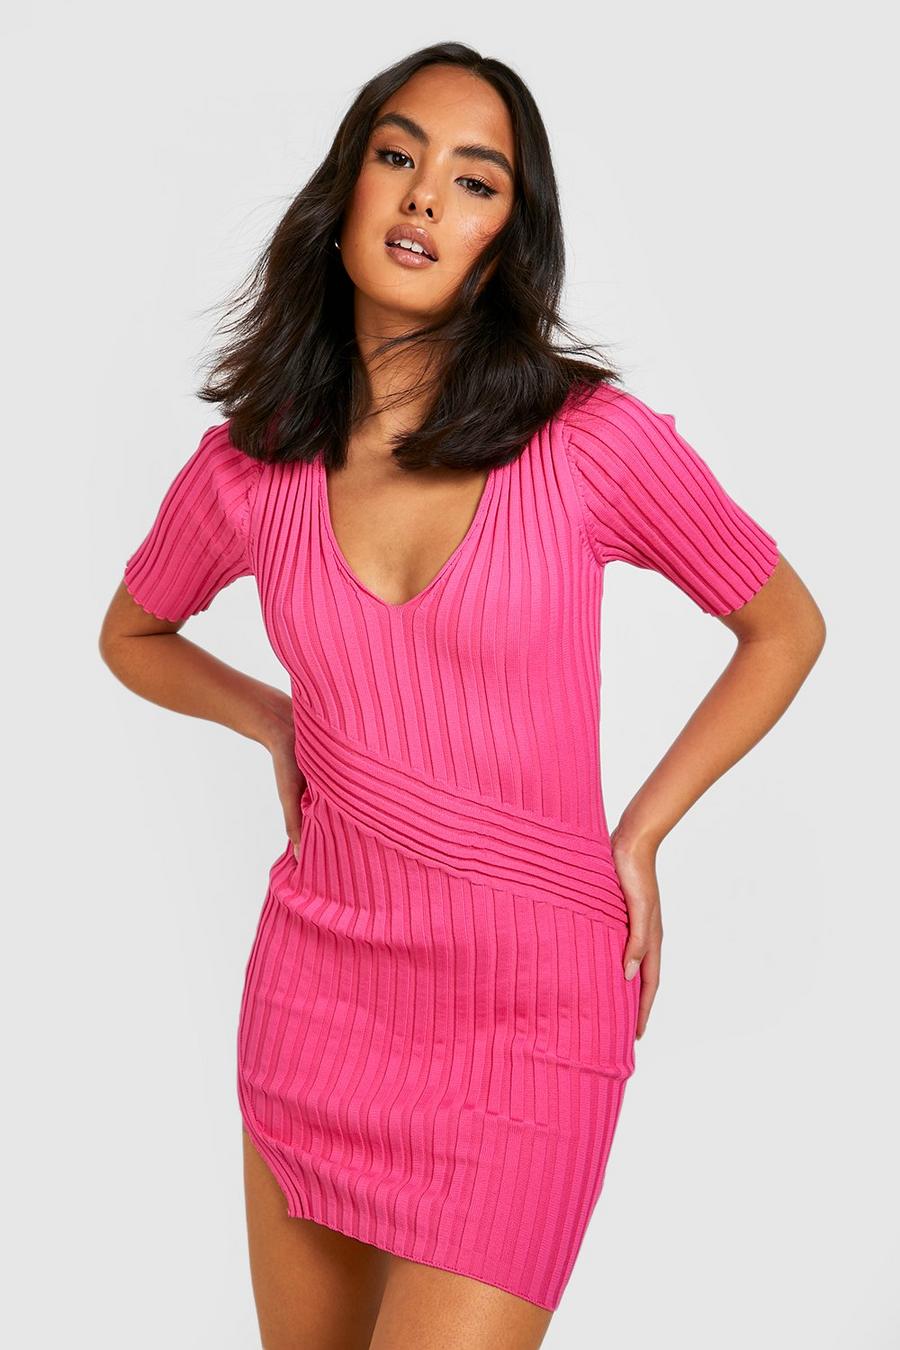 Zweifarbiges geripptes Kleid mit Polo-Kragen, Hot pink